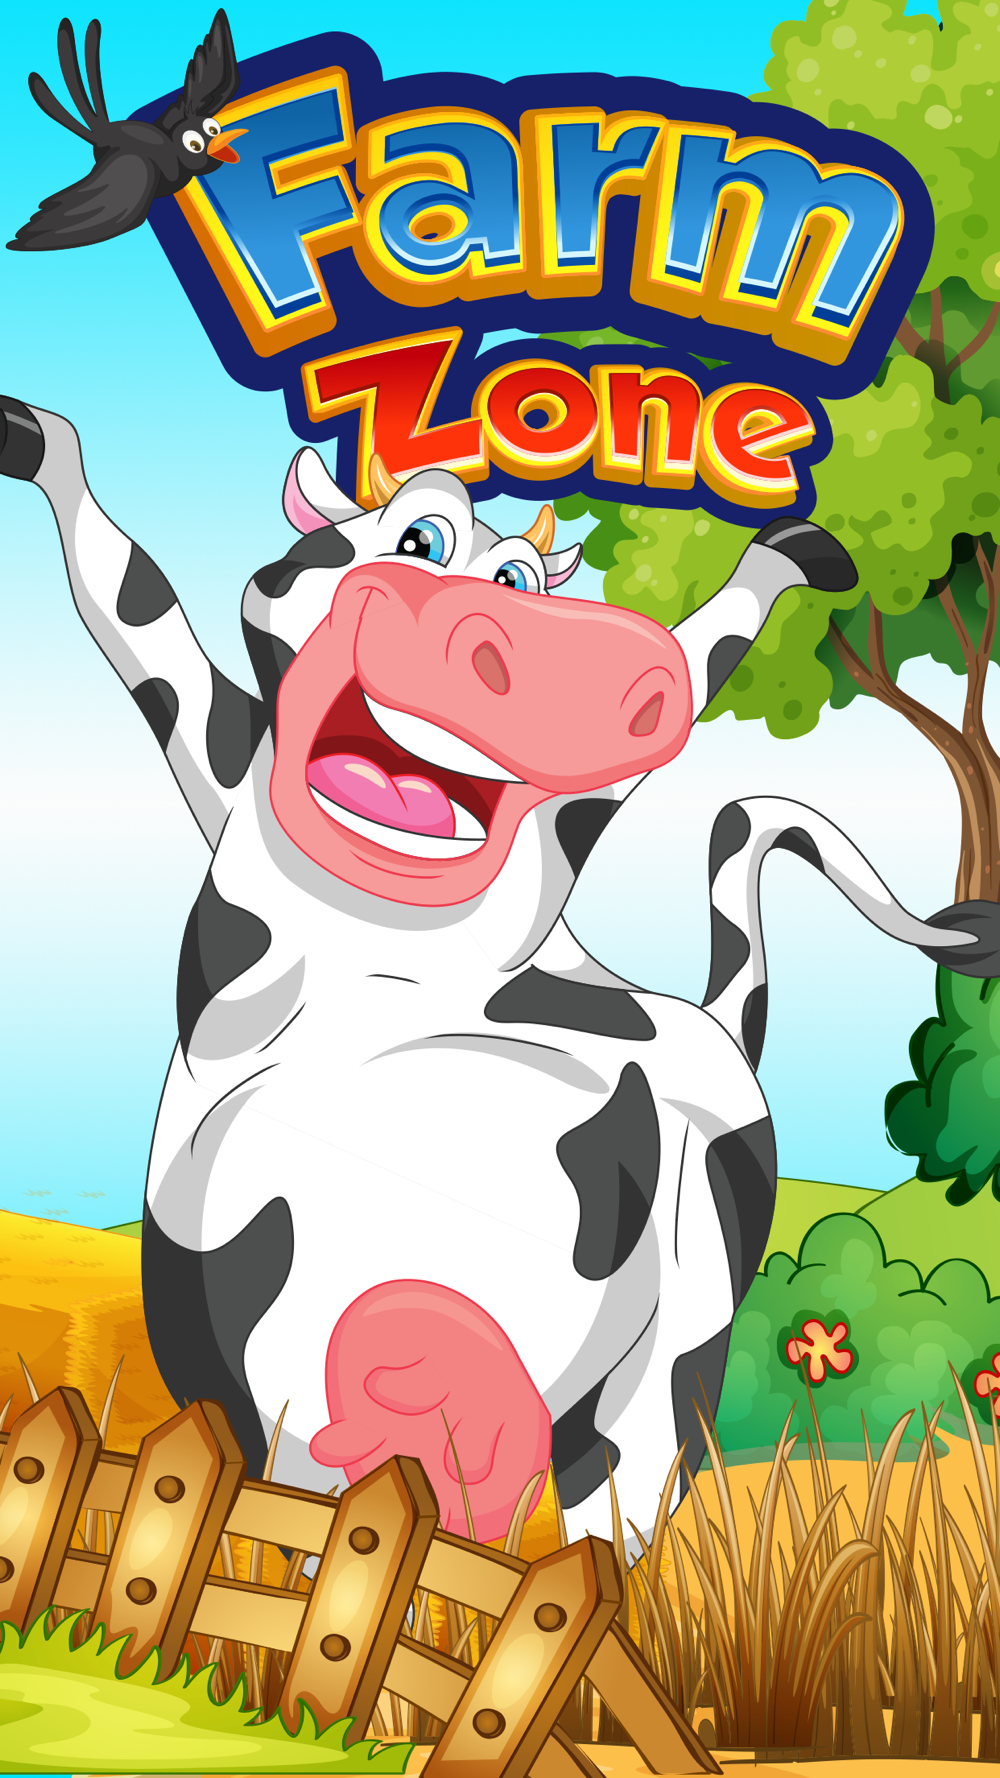 ファームジグソーパズル 2 3歳の無料教育キッズゲーム Free Download App For Iphone Steprimo Com